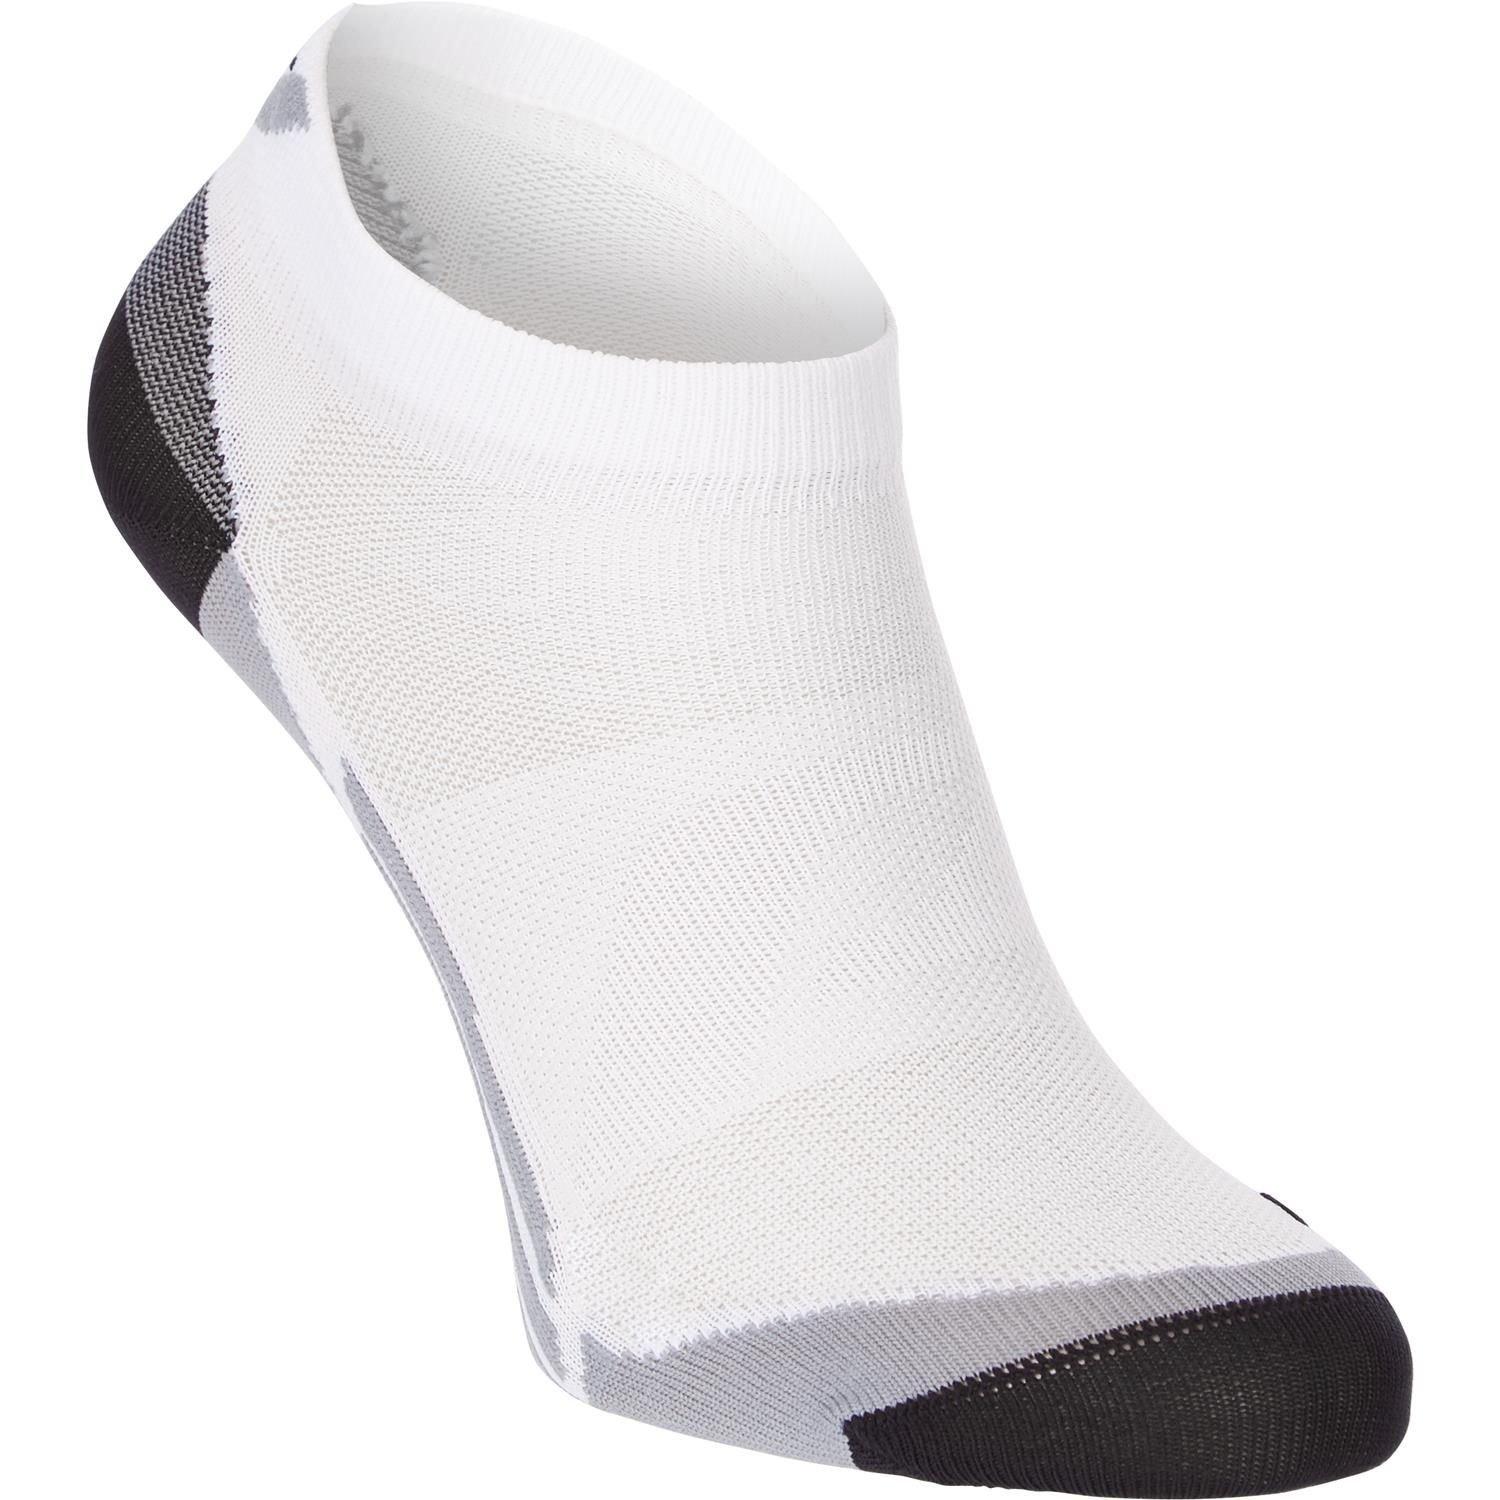 Ponožky Pro Touch Loui Veľkosť: 39-41 EUR